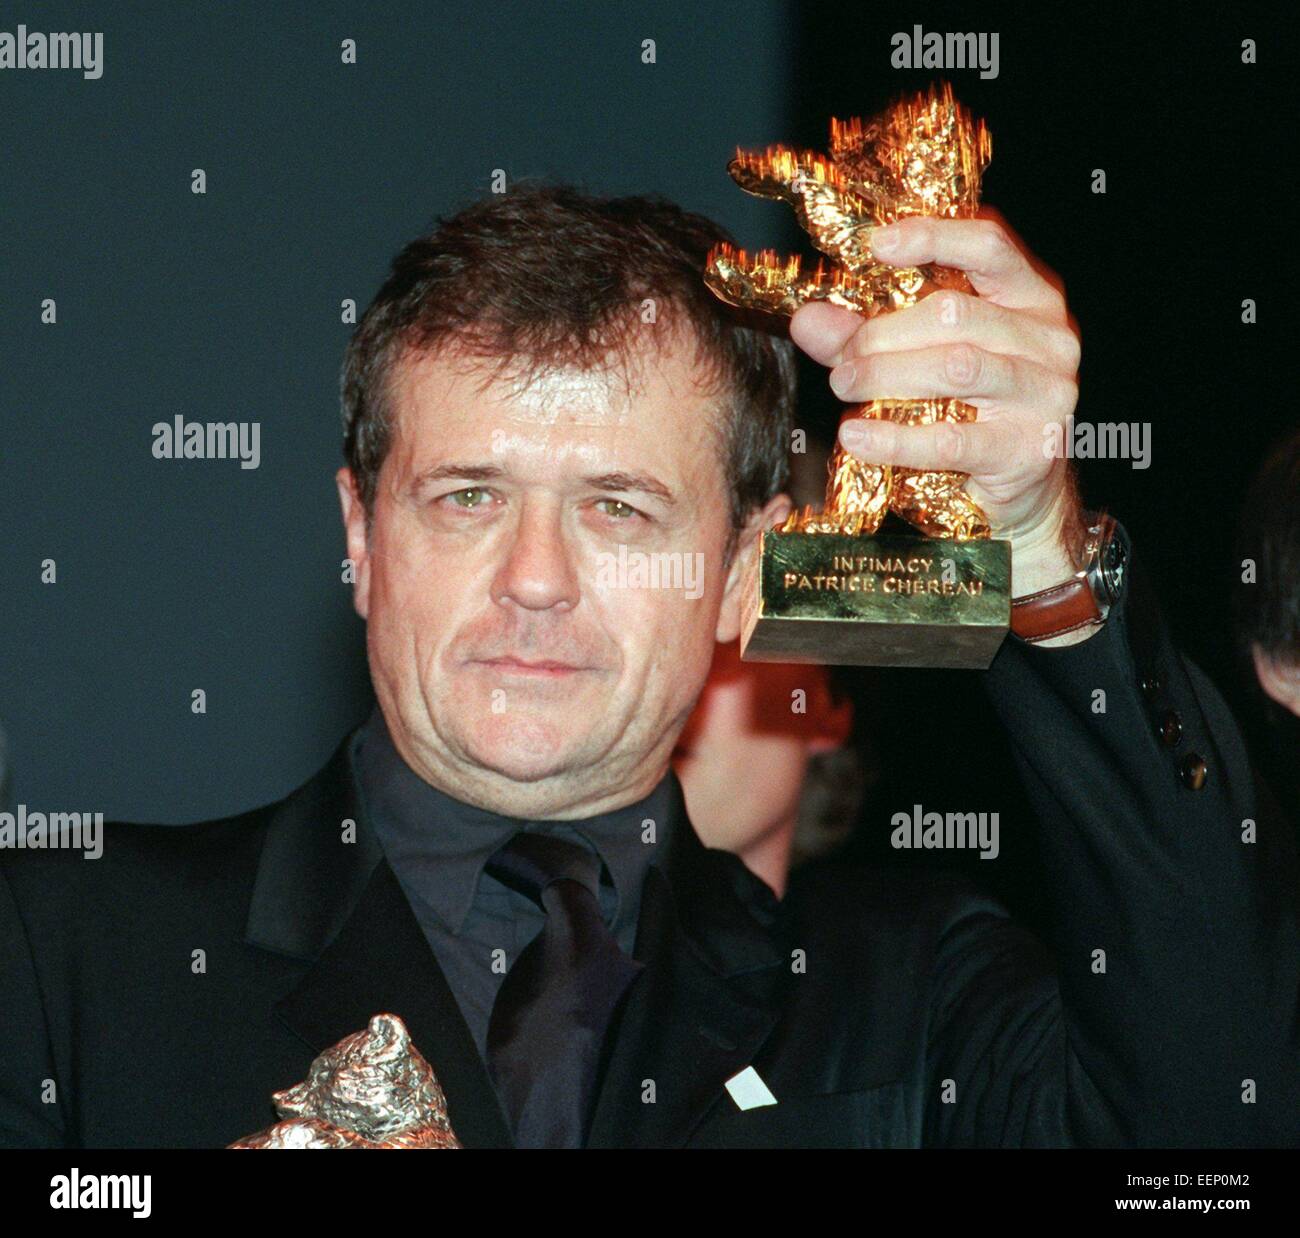 Director Direktor Chéreau Goldener Bär für seinen Film "Intimacy" auf der Berlinale gewinnt am 18. Februar 2001. Stockfoto